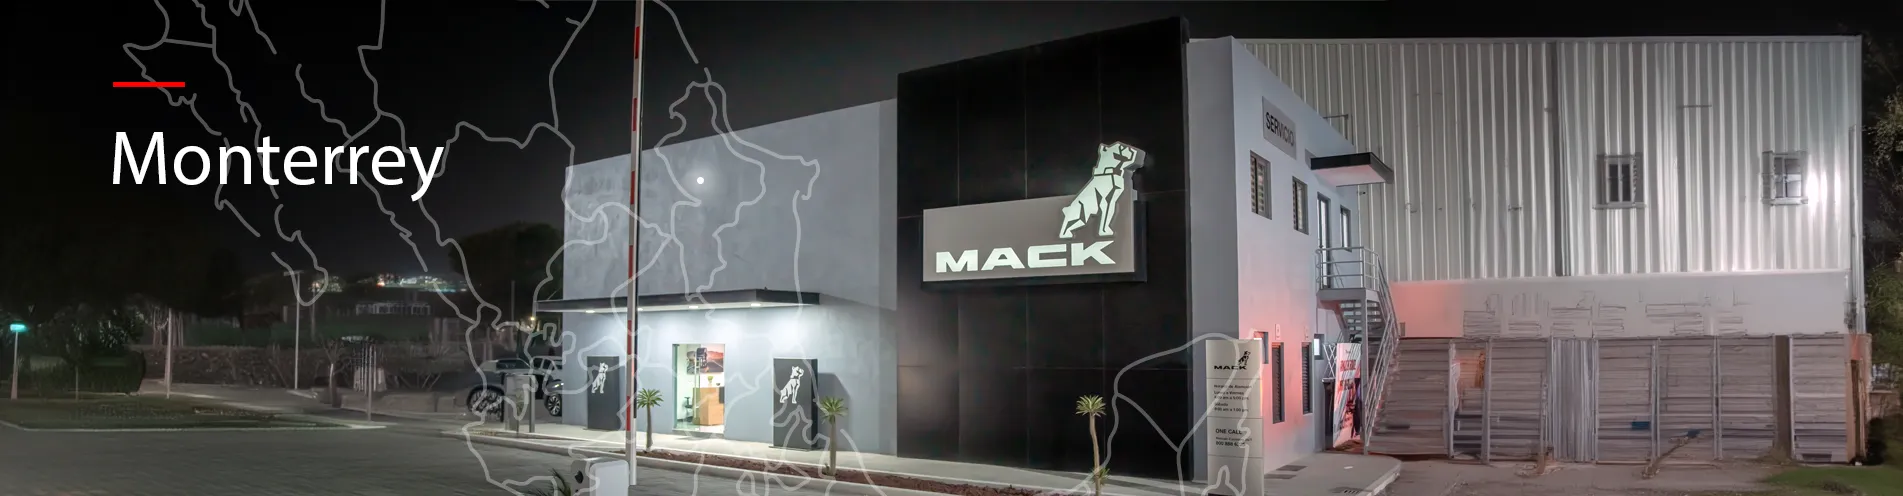 Reubicación de sucursal Mack en Monterrey